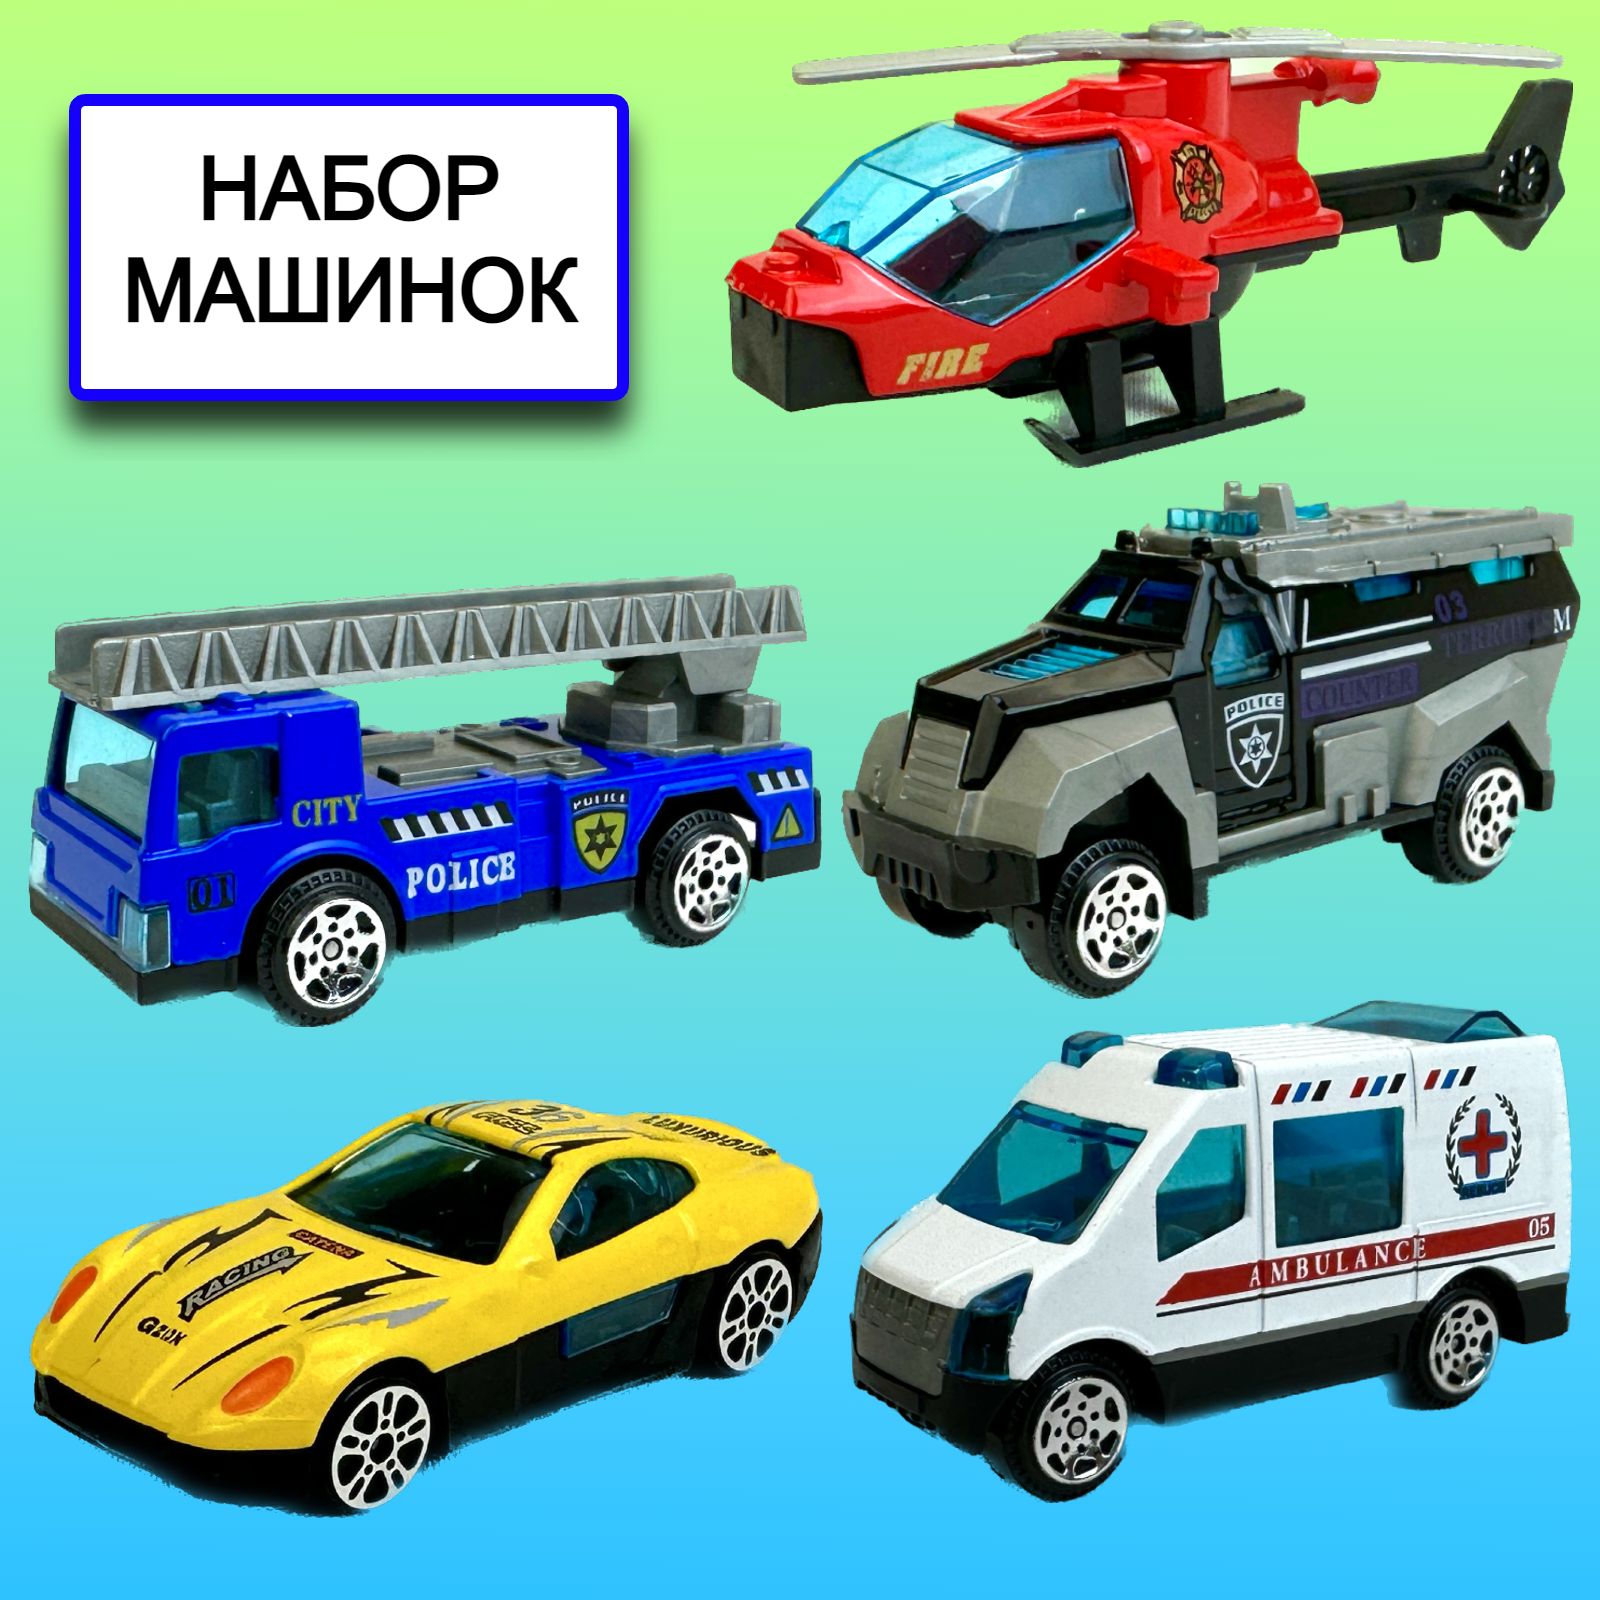 Набор металлических машинок Yako Toys городские службы Mini Car, 4 машинки, вертолет